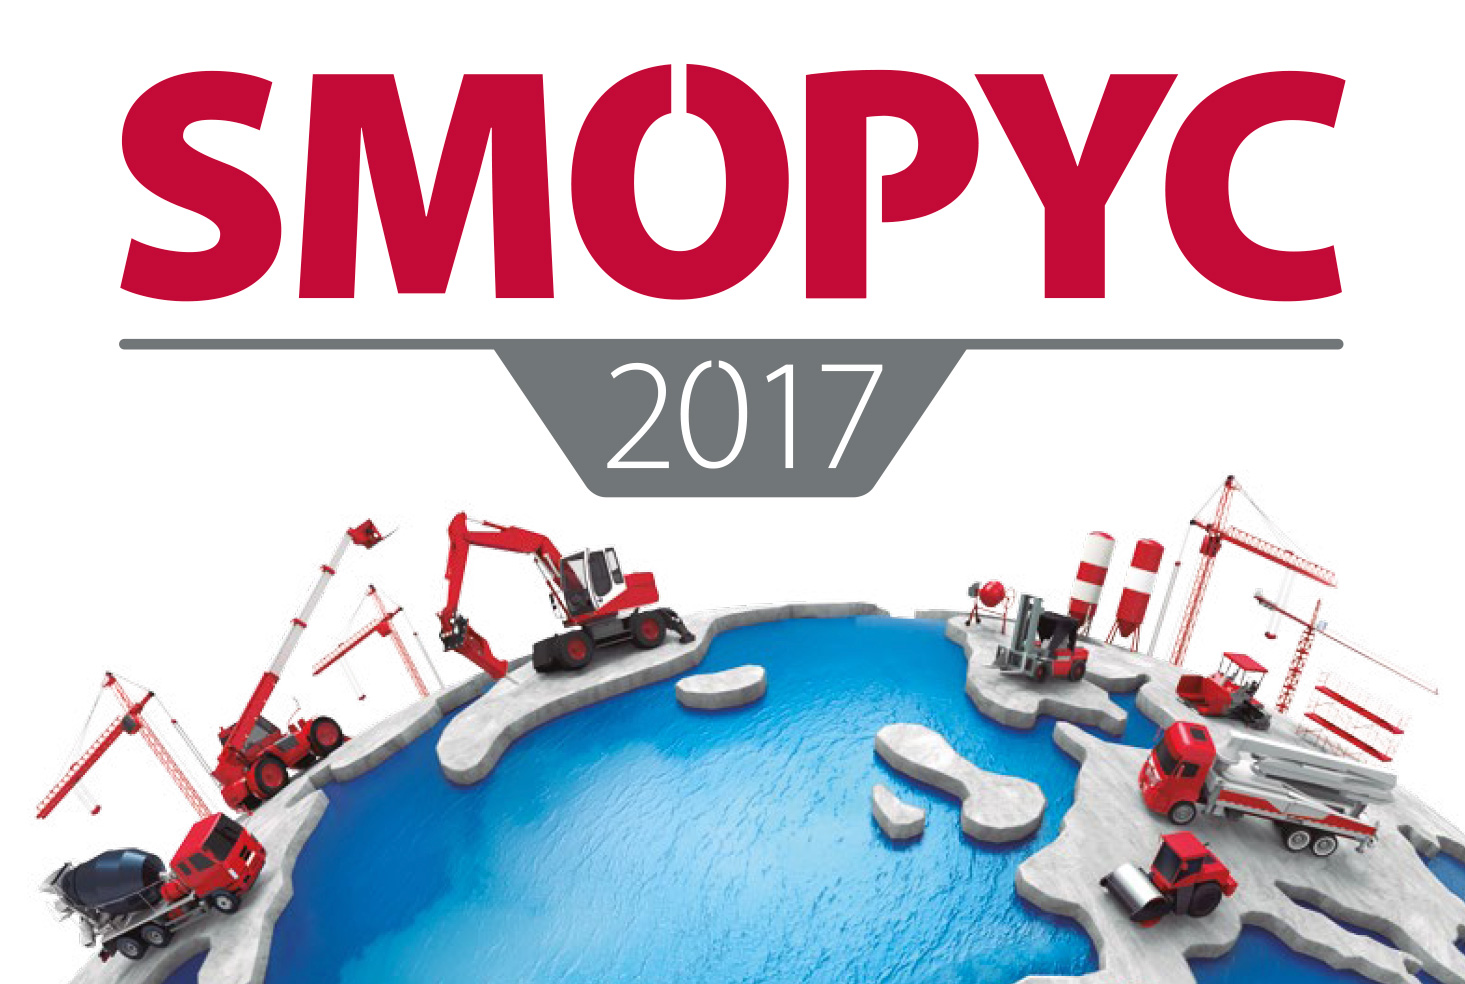 SMOPYC 2017 lleva su promocion a los principales foros sectoriales. La proxima cita sera del 25 al 29 de abril de 2017